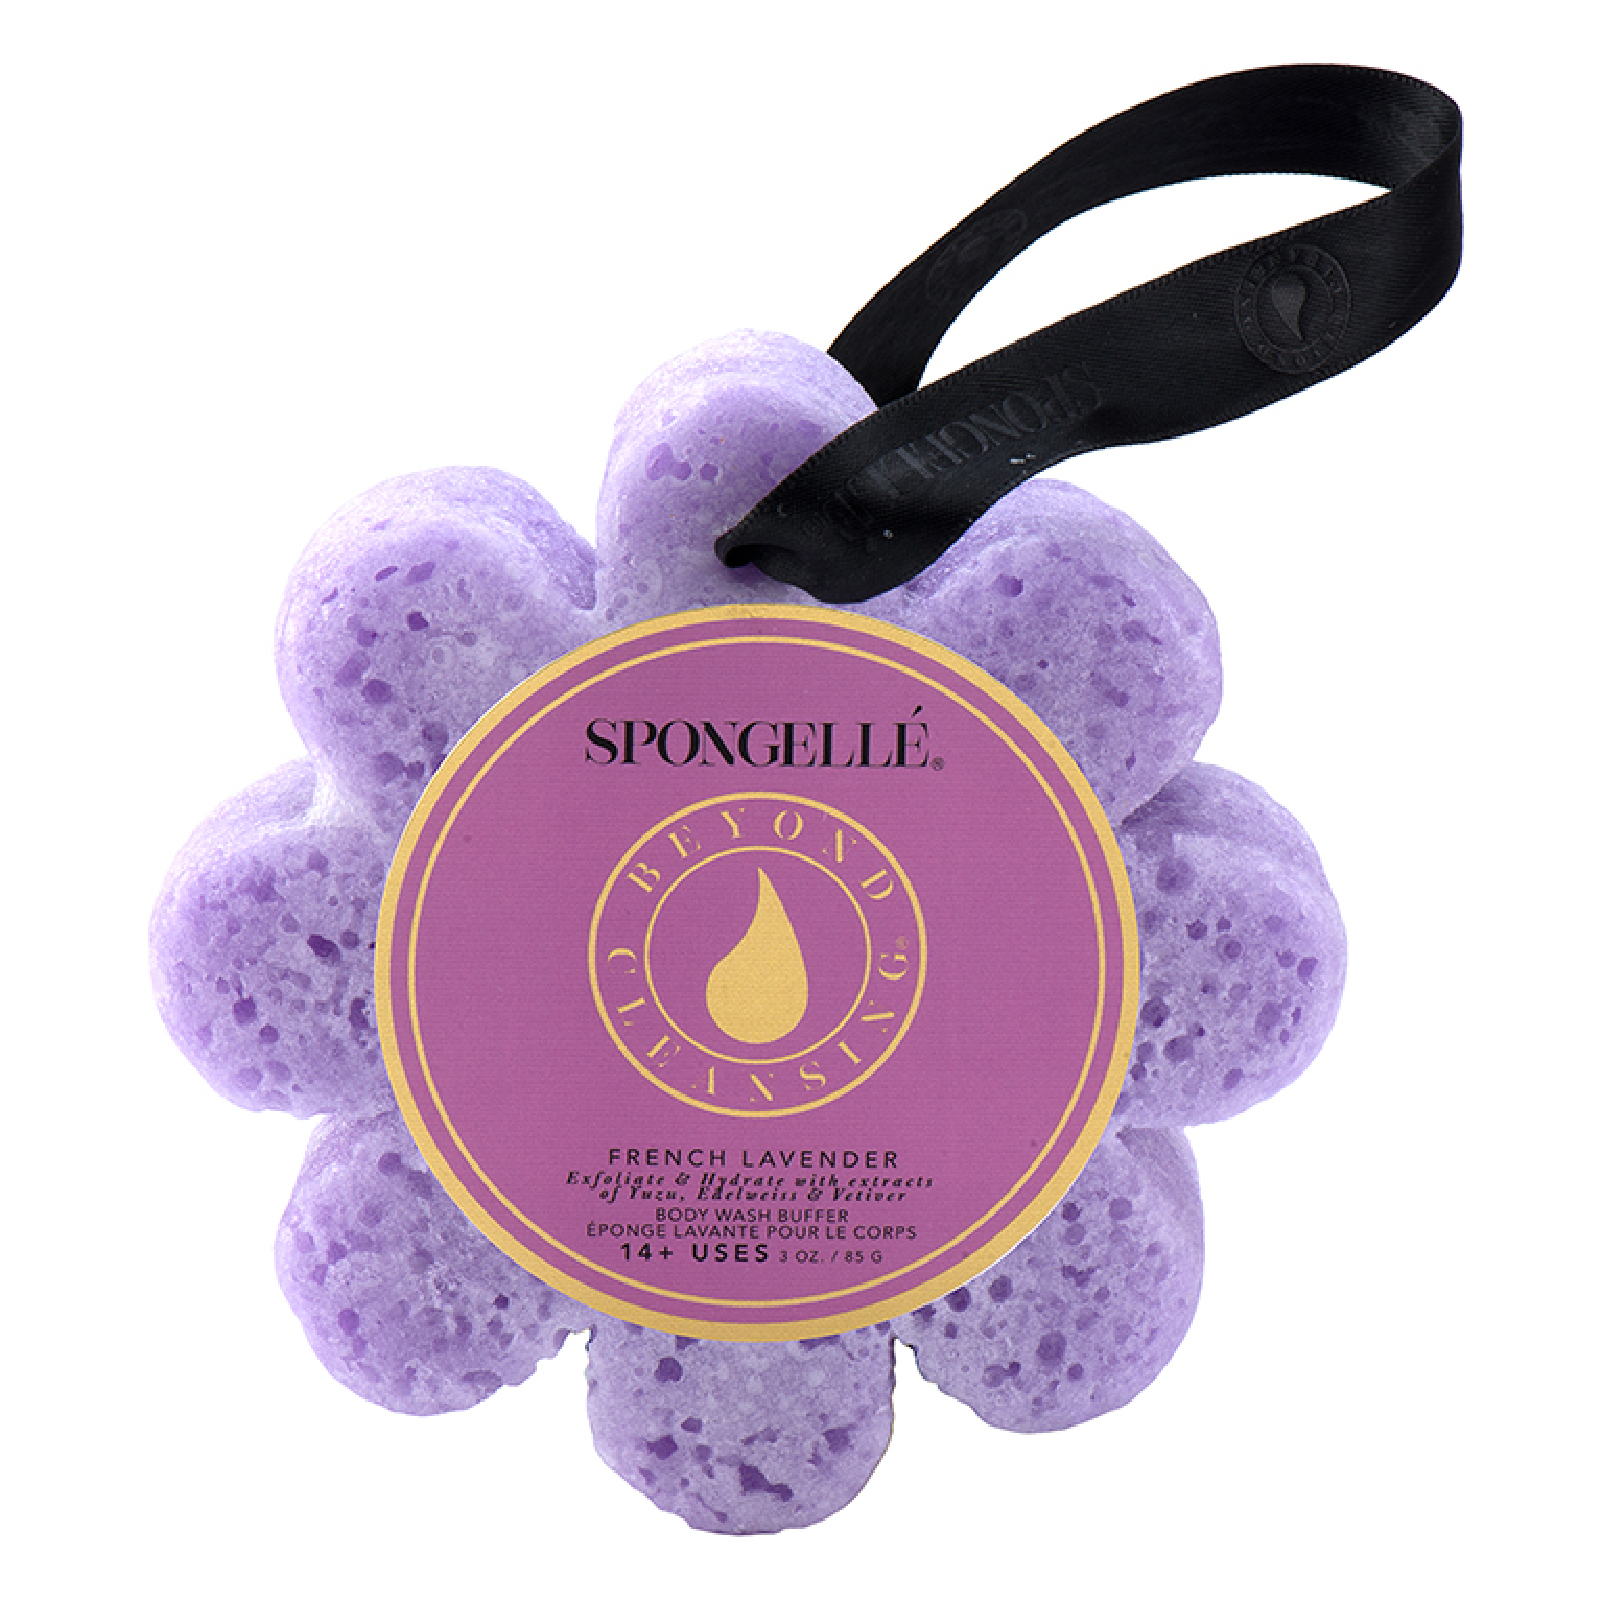 Esponja con jabón corporal perfumado en forma de flor de Spongellé - Lavanda francesa